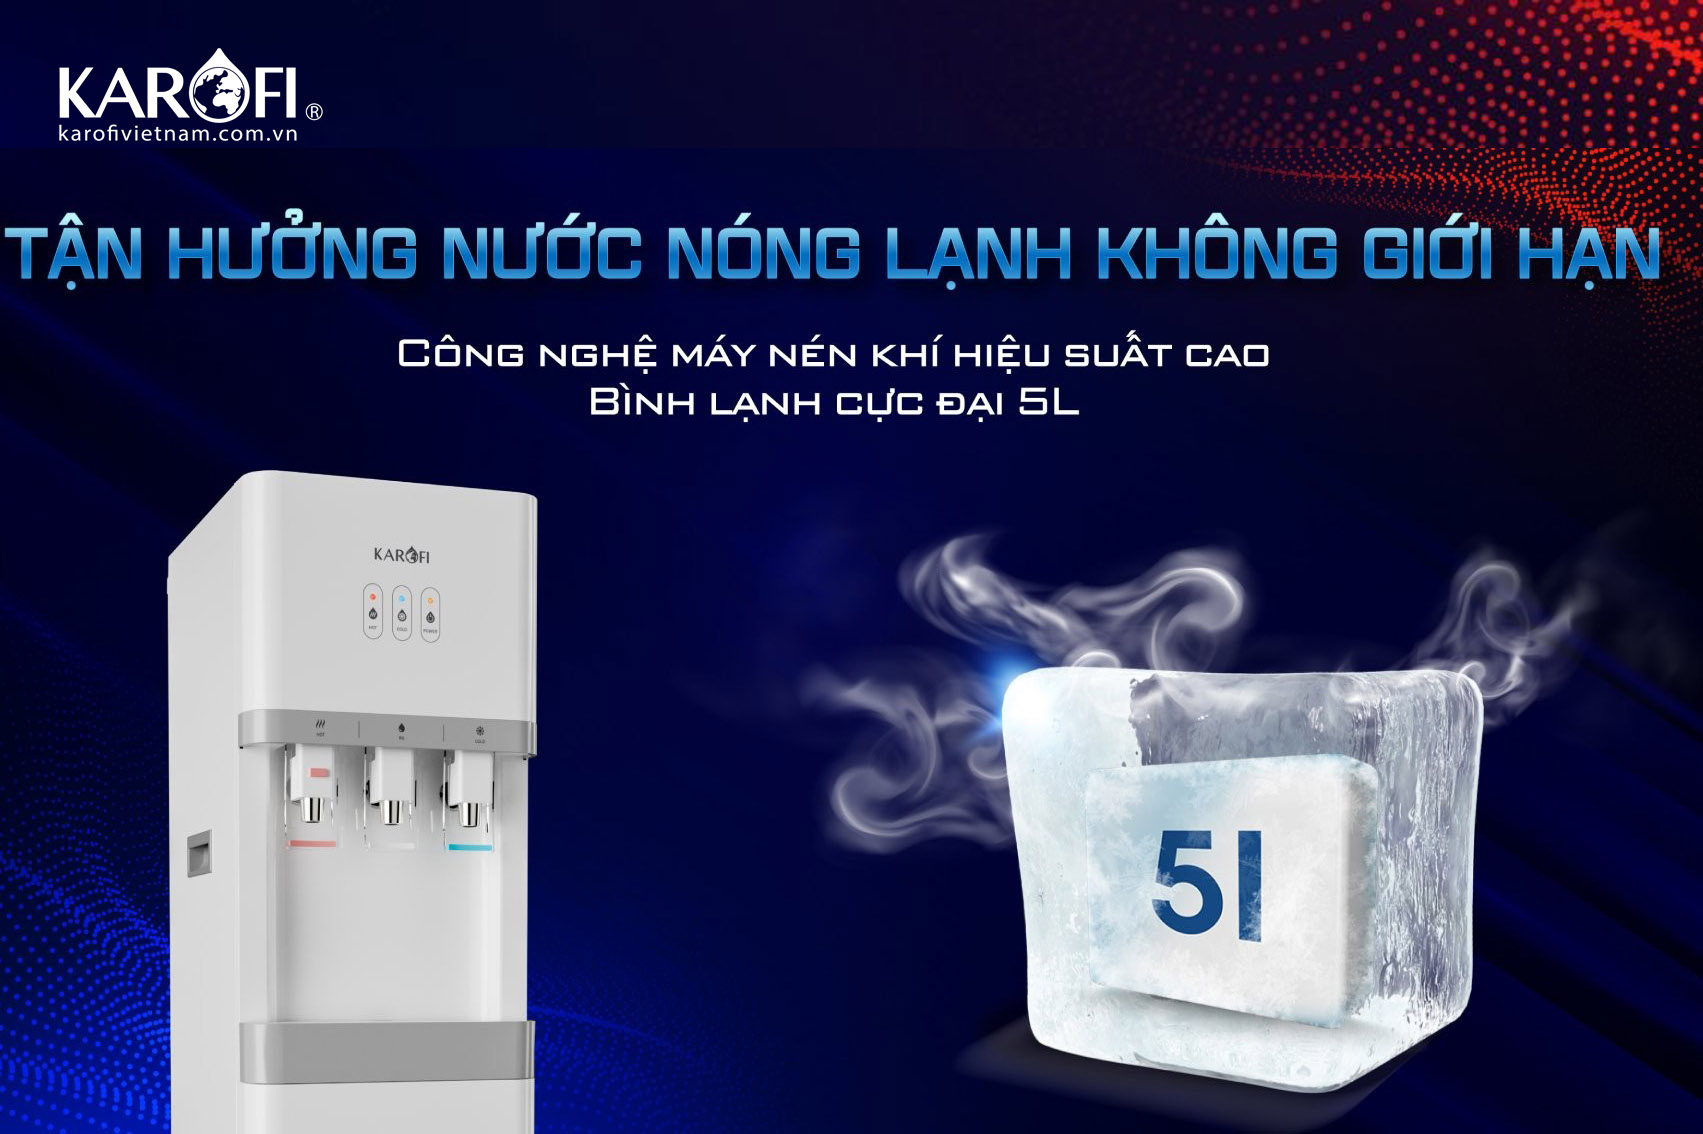 Công nghệ máy nén khí hiệu suất cao với bình lạnh cực đại tới 5L